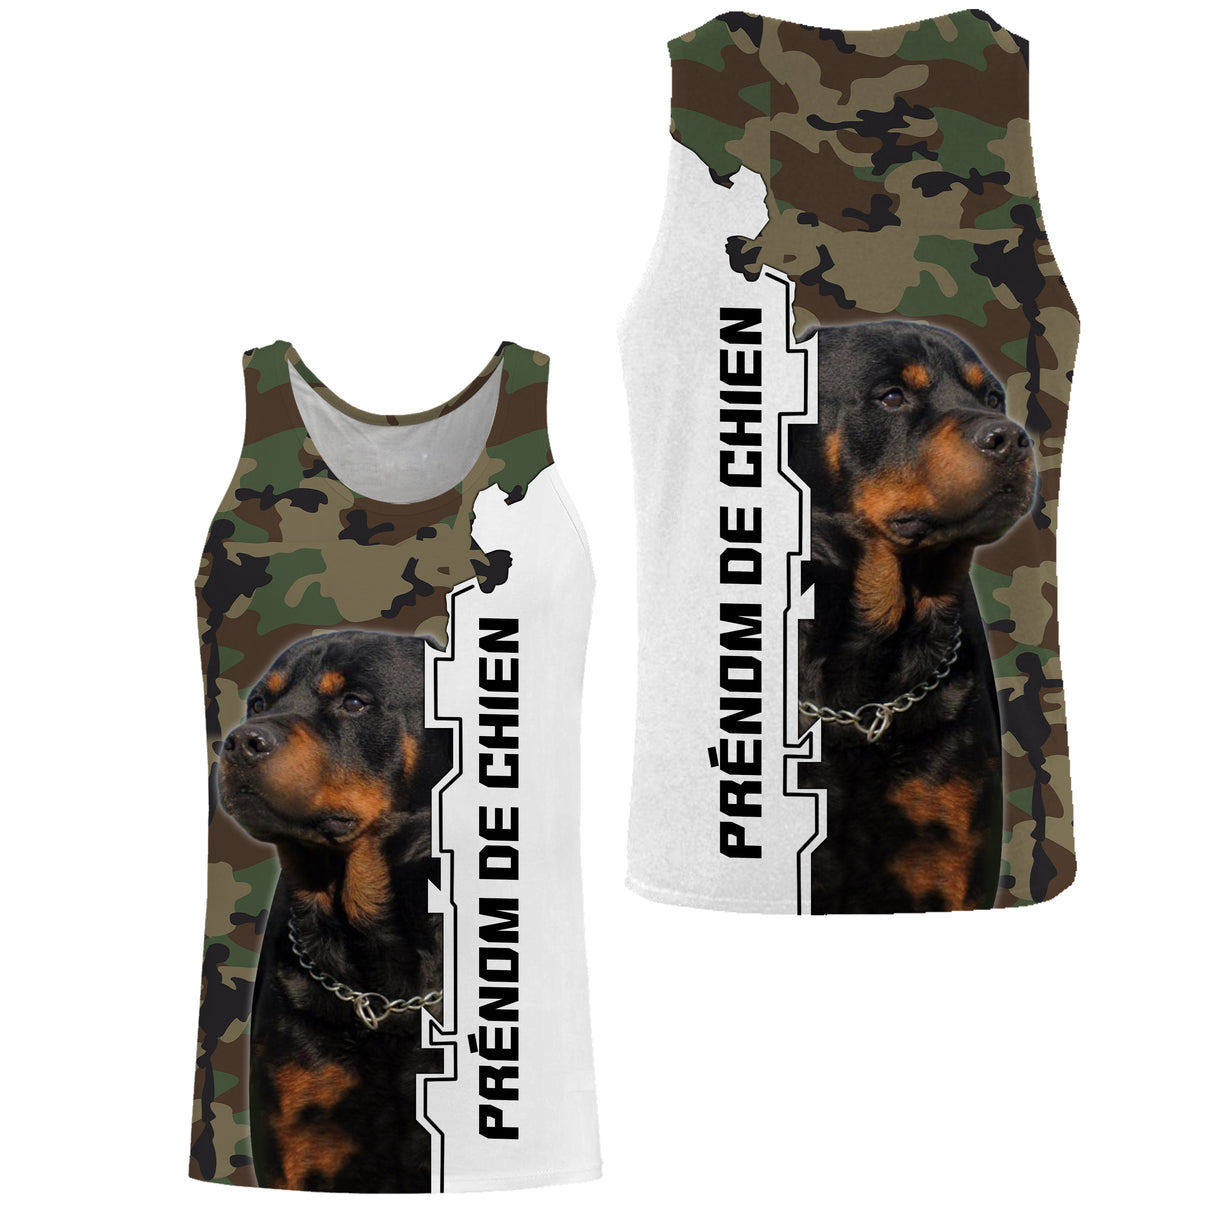 Der Rottweiler, Hunderasse mit Ursprung in Deutschland, T-Shirt, Kapuzenpullover für Männer, Frauen, personalisiertes Geschenk – CTS14042215